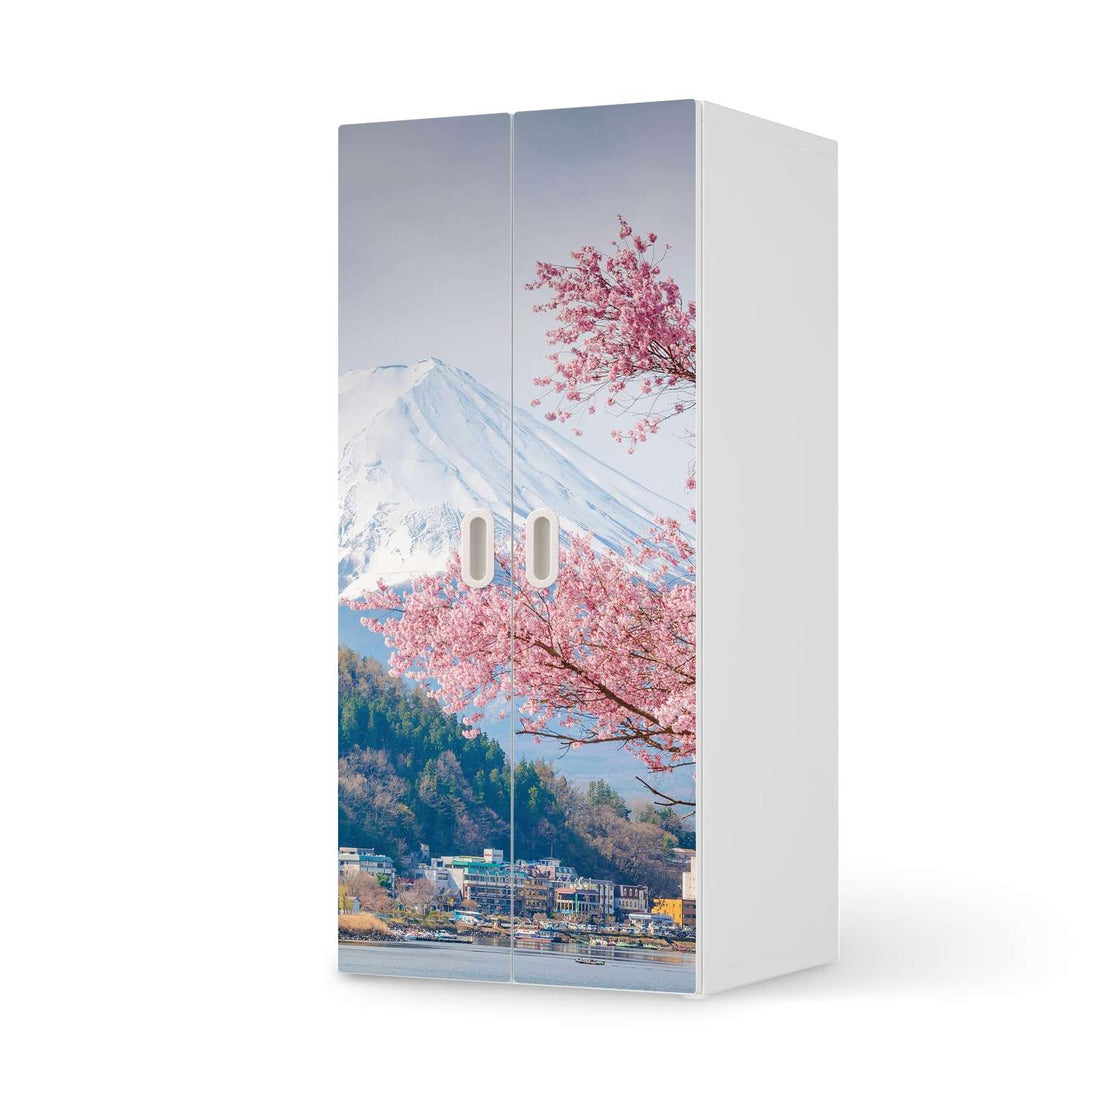 Möbelfolie Mount Fuji - IKEA Stuva / Fritids Schrank - 2 große Türen  - weiss